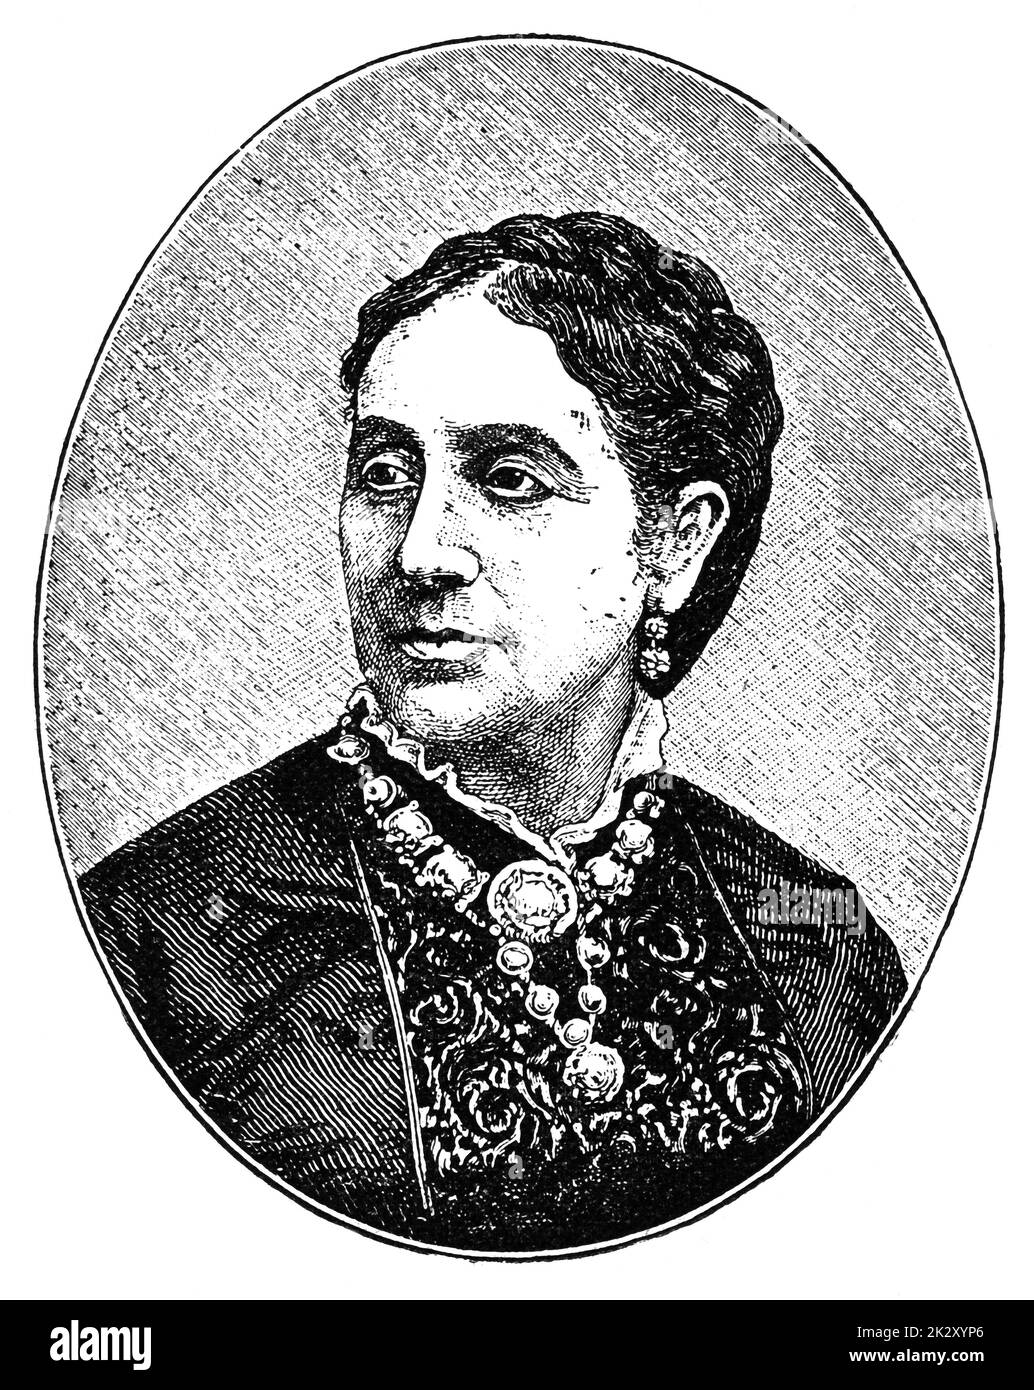 Porträt von Adelaide Ristori - eine bedeutende italienische Tragödienne, die oft als Marquise bezeichnet wurde. Illustration des 19. Jahrhunderts. Weißer Hintergrund. Stockfoto